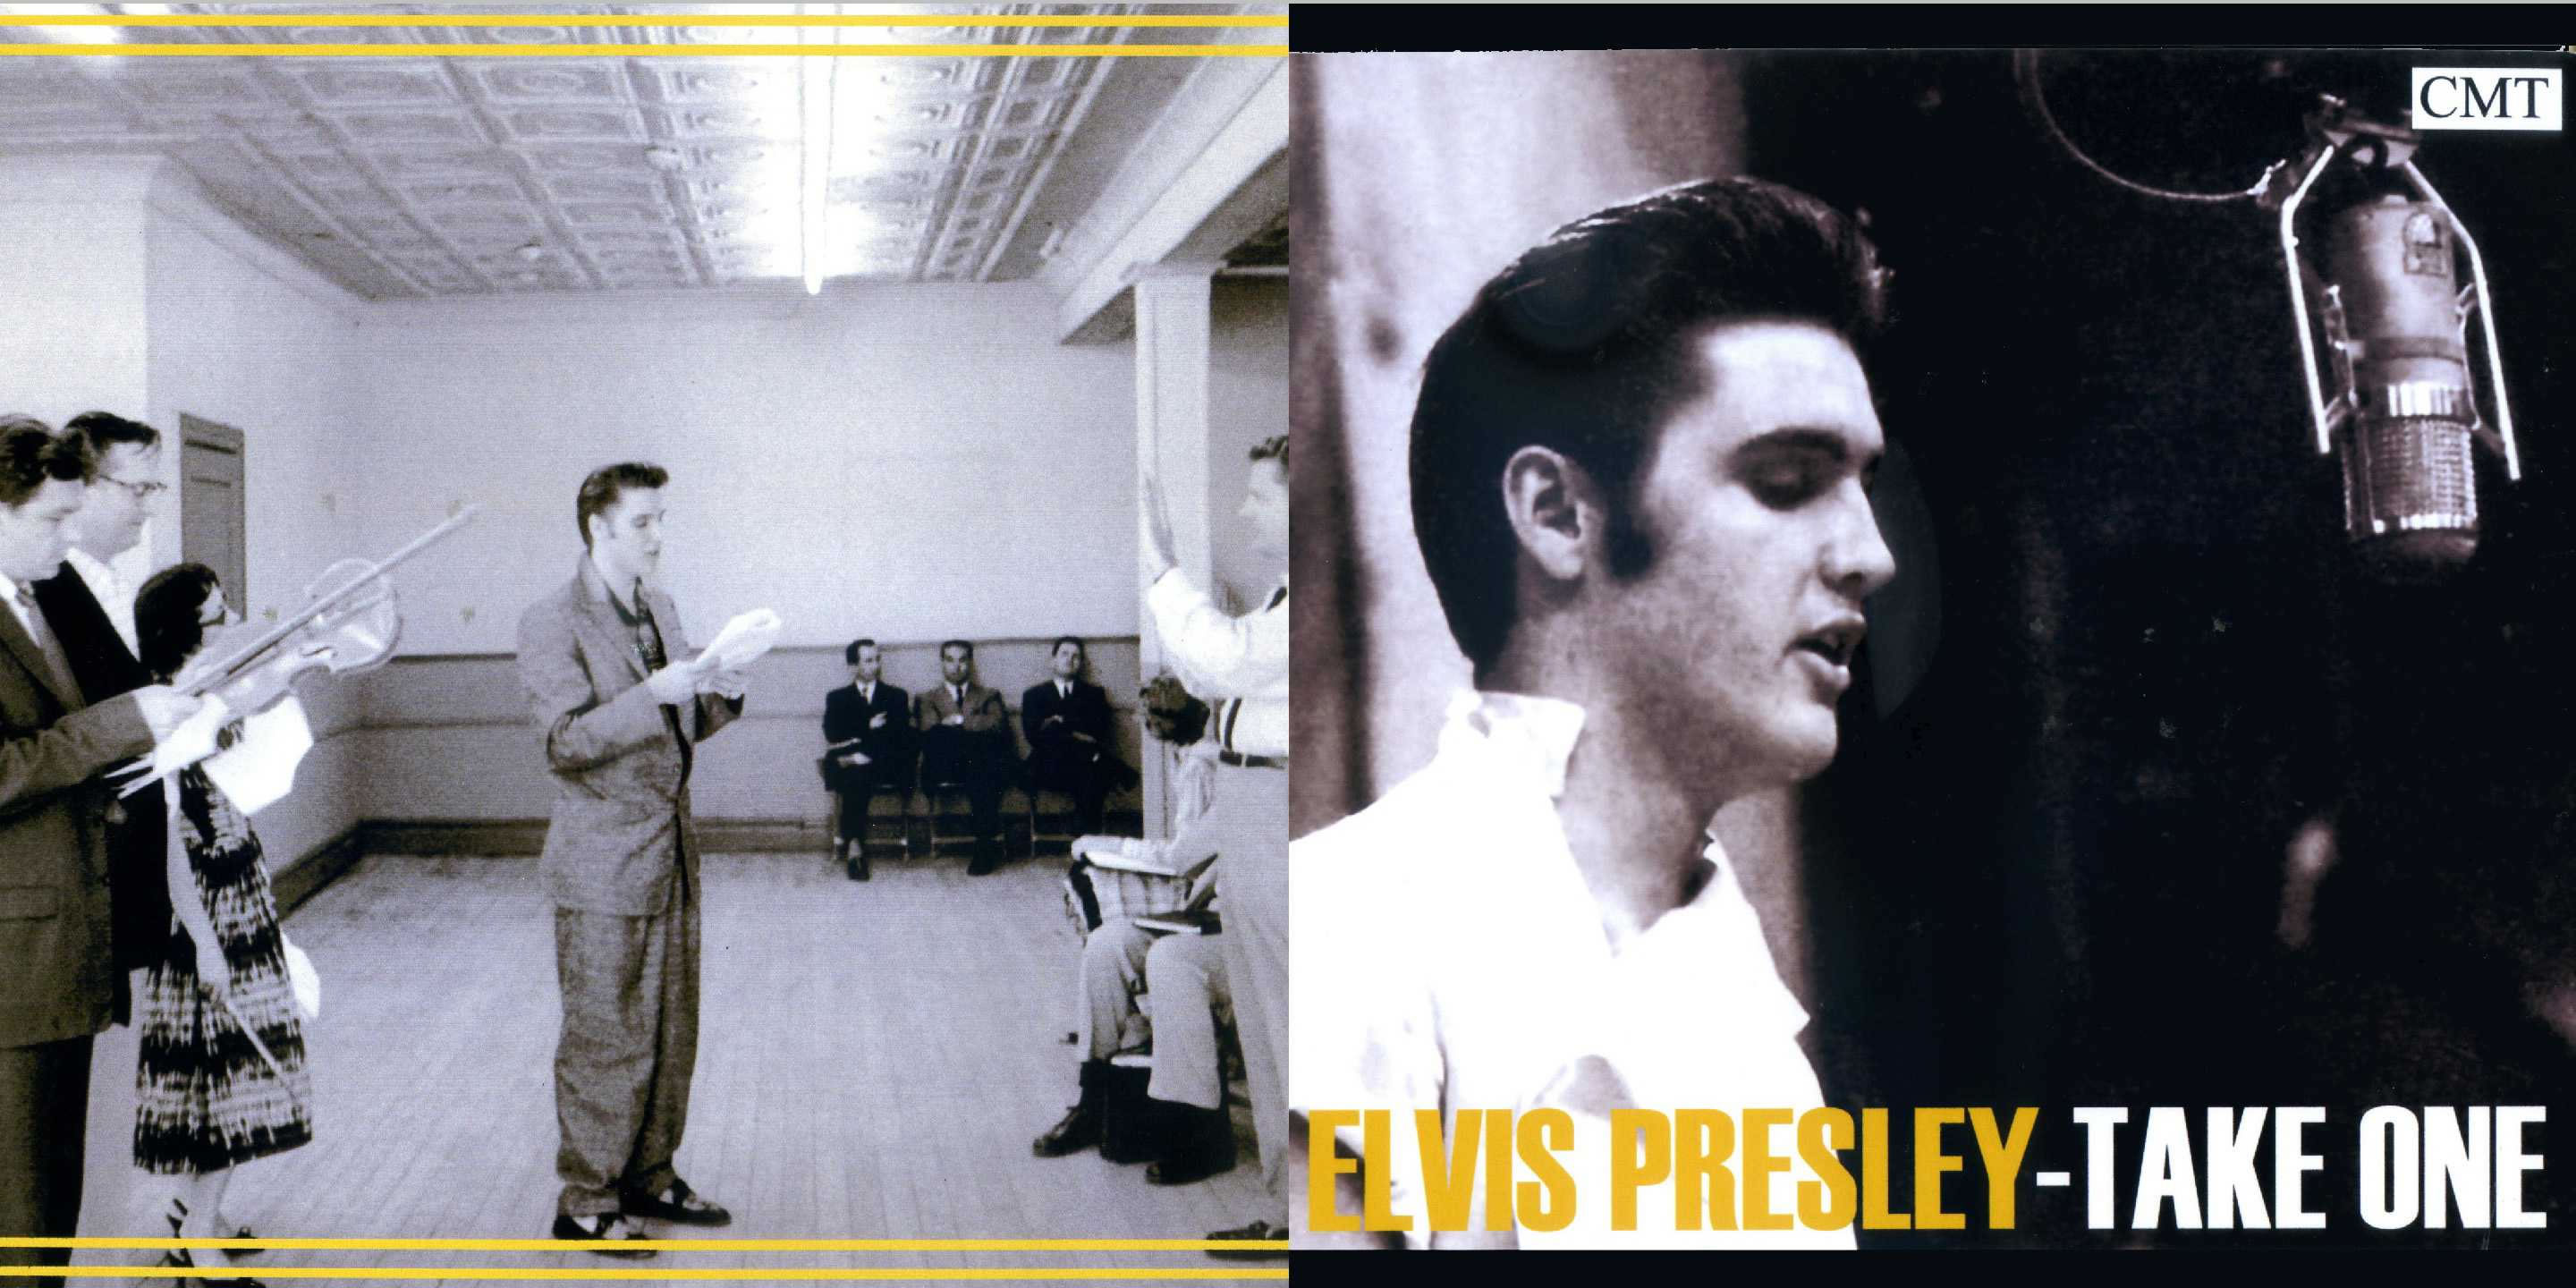 Elvis Presley - Take One, Vol. 4 (E) [CMT]